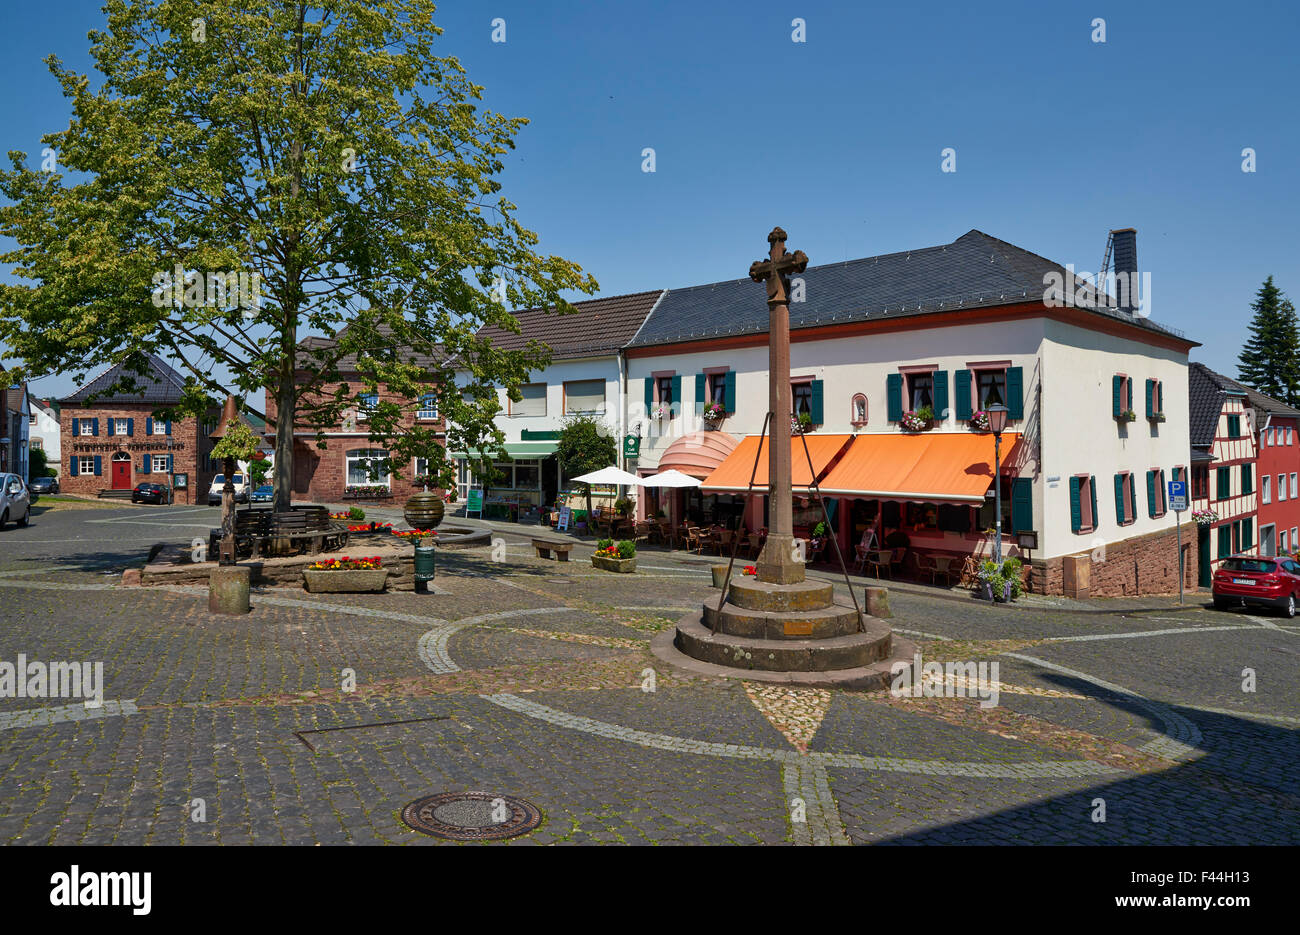 Markt-Platz von Nideggen, North Rhine-Westphalia, Germany, Europa Stockfoto